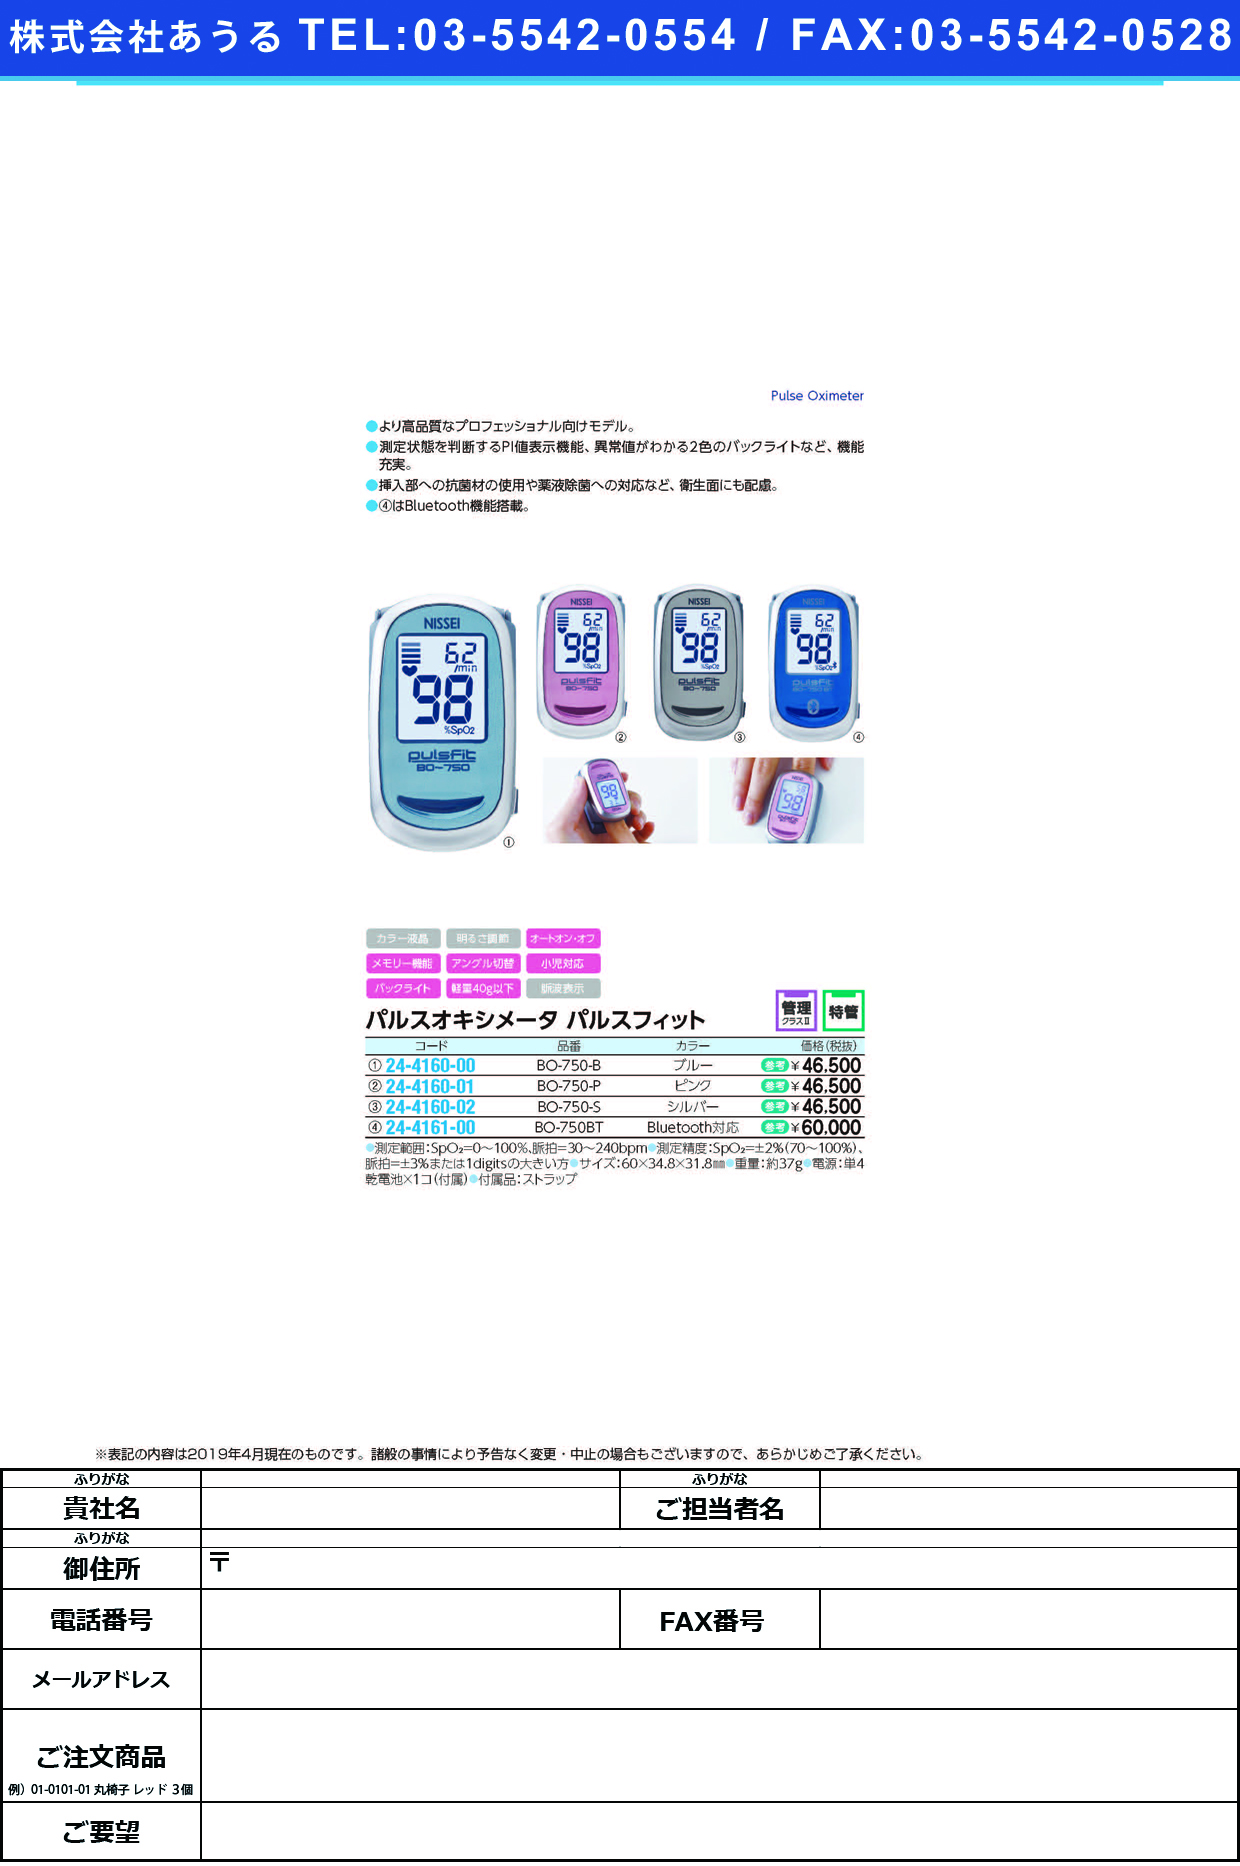 (24-4161-00)パルスオキシメータパルスフィット BO-750BT ﾊﾟﾙｽｵｷｼﾒｰﾀﾊﾟﾙｽﾌｨｯﾄ(日本精密測器)【1台単位】【2019年カタログ商品】